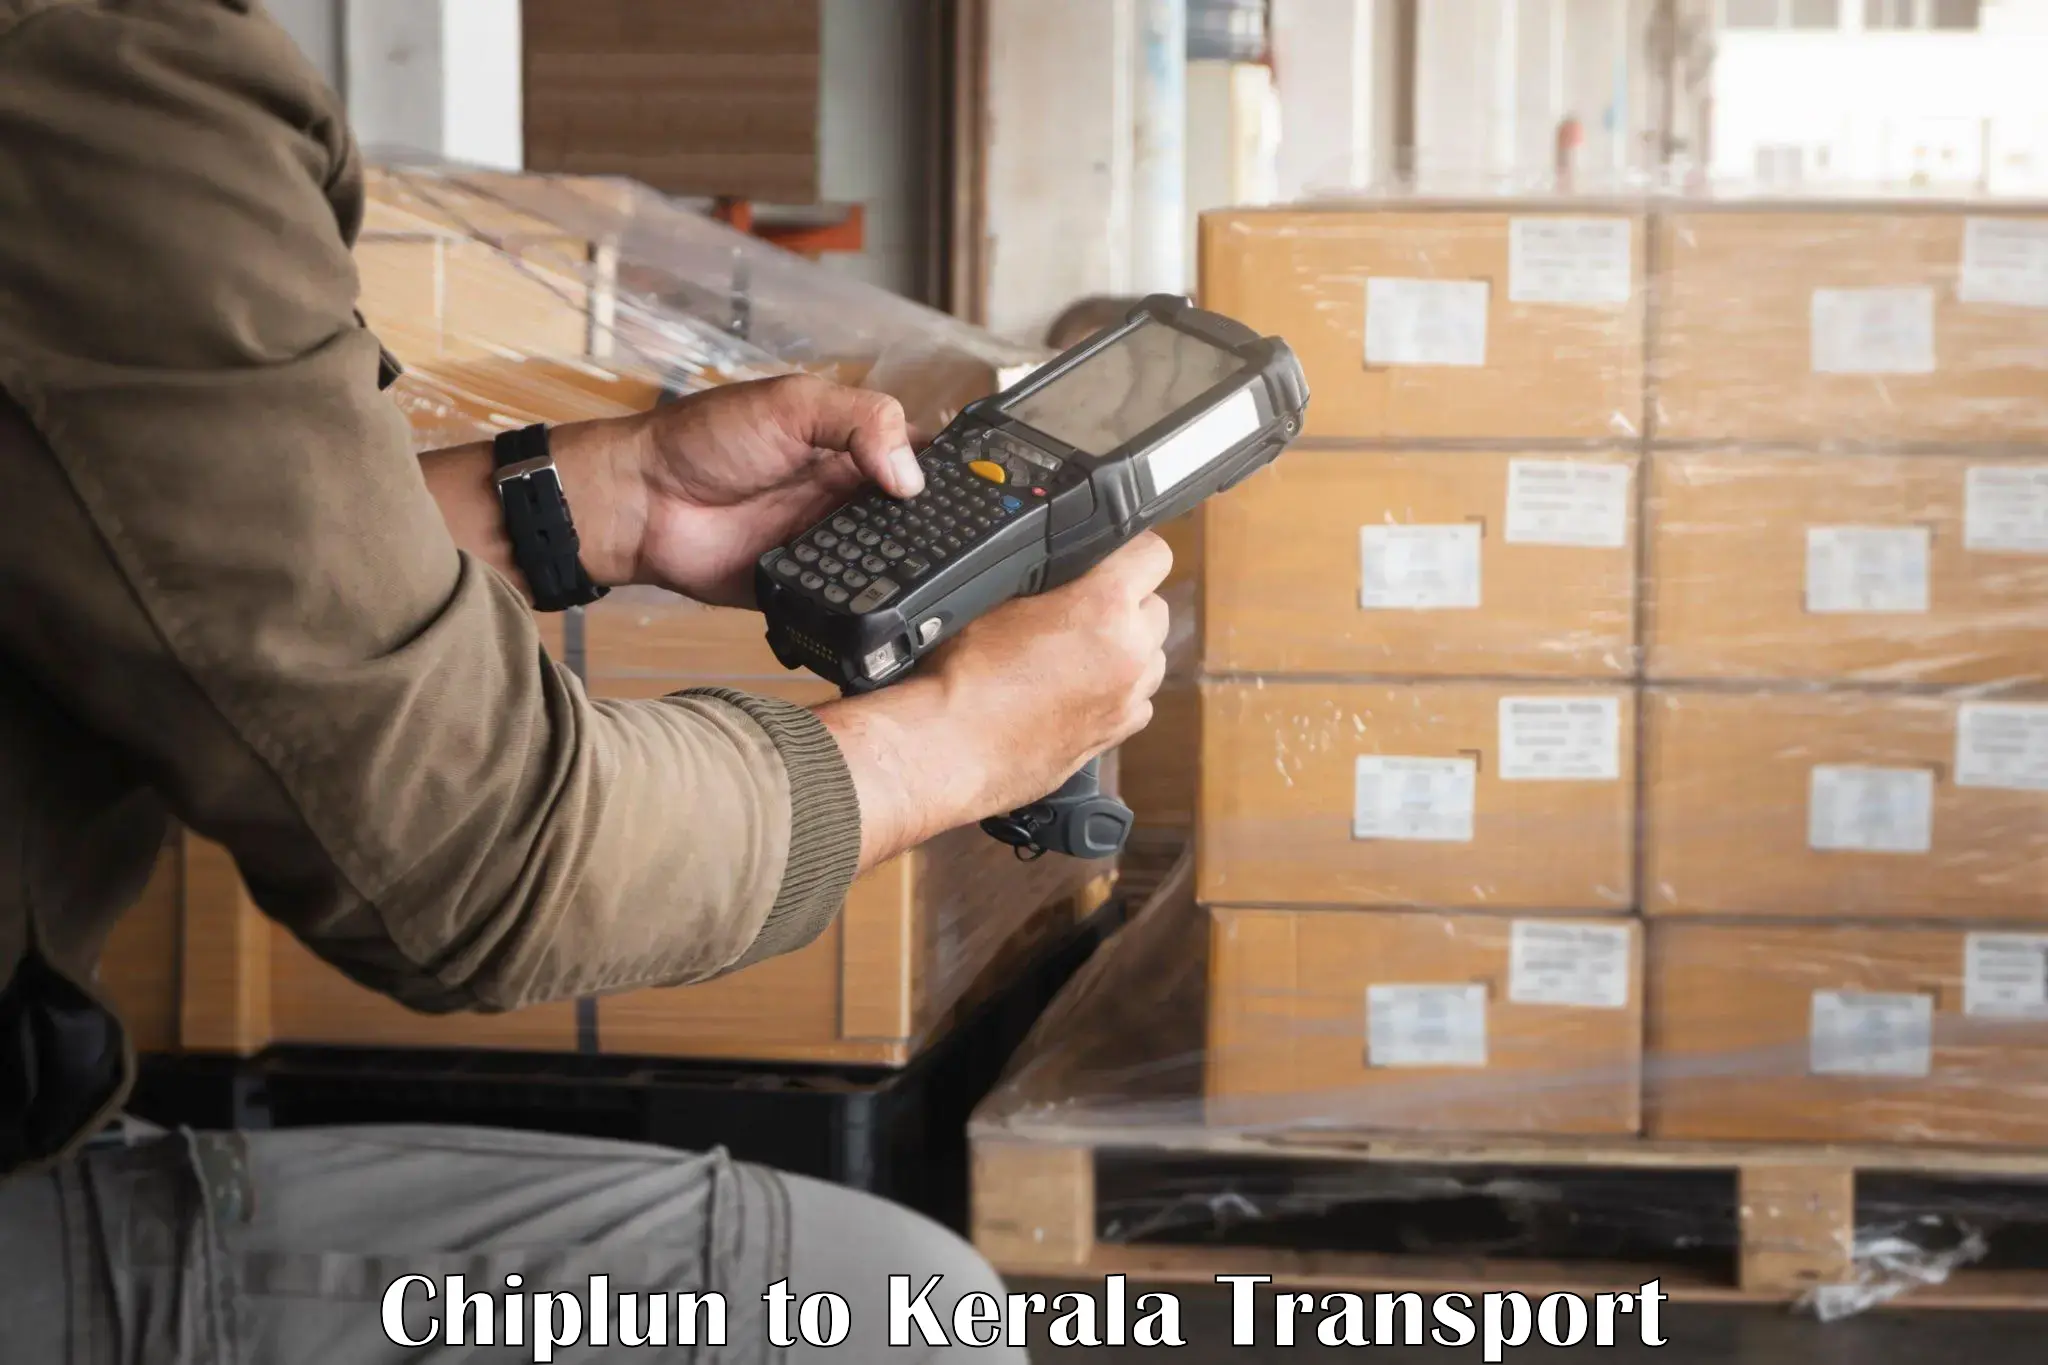 Online transport service Chiplun to Thiruvananthapuram